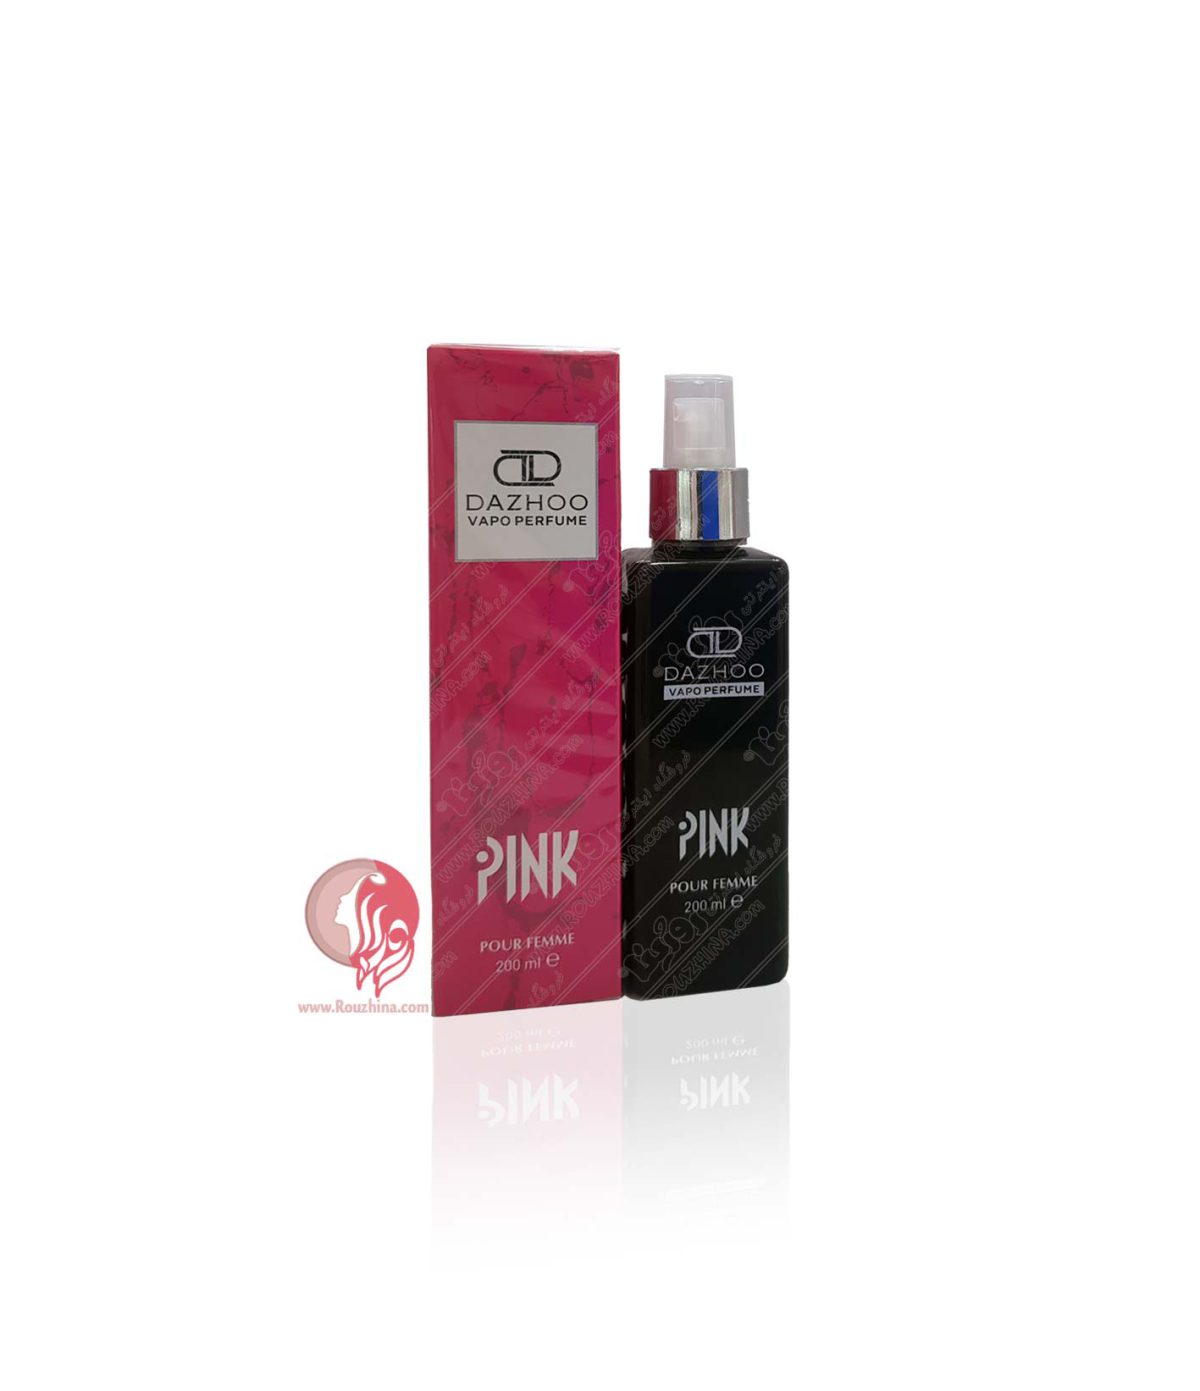 خرید بادی اسپلش Pink پینک داژو : طبع معتدل و رایحه تند و شیرین با تخفیف ویژه